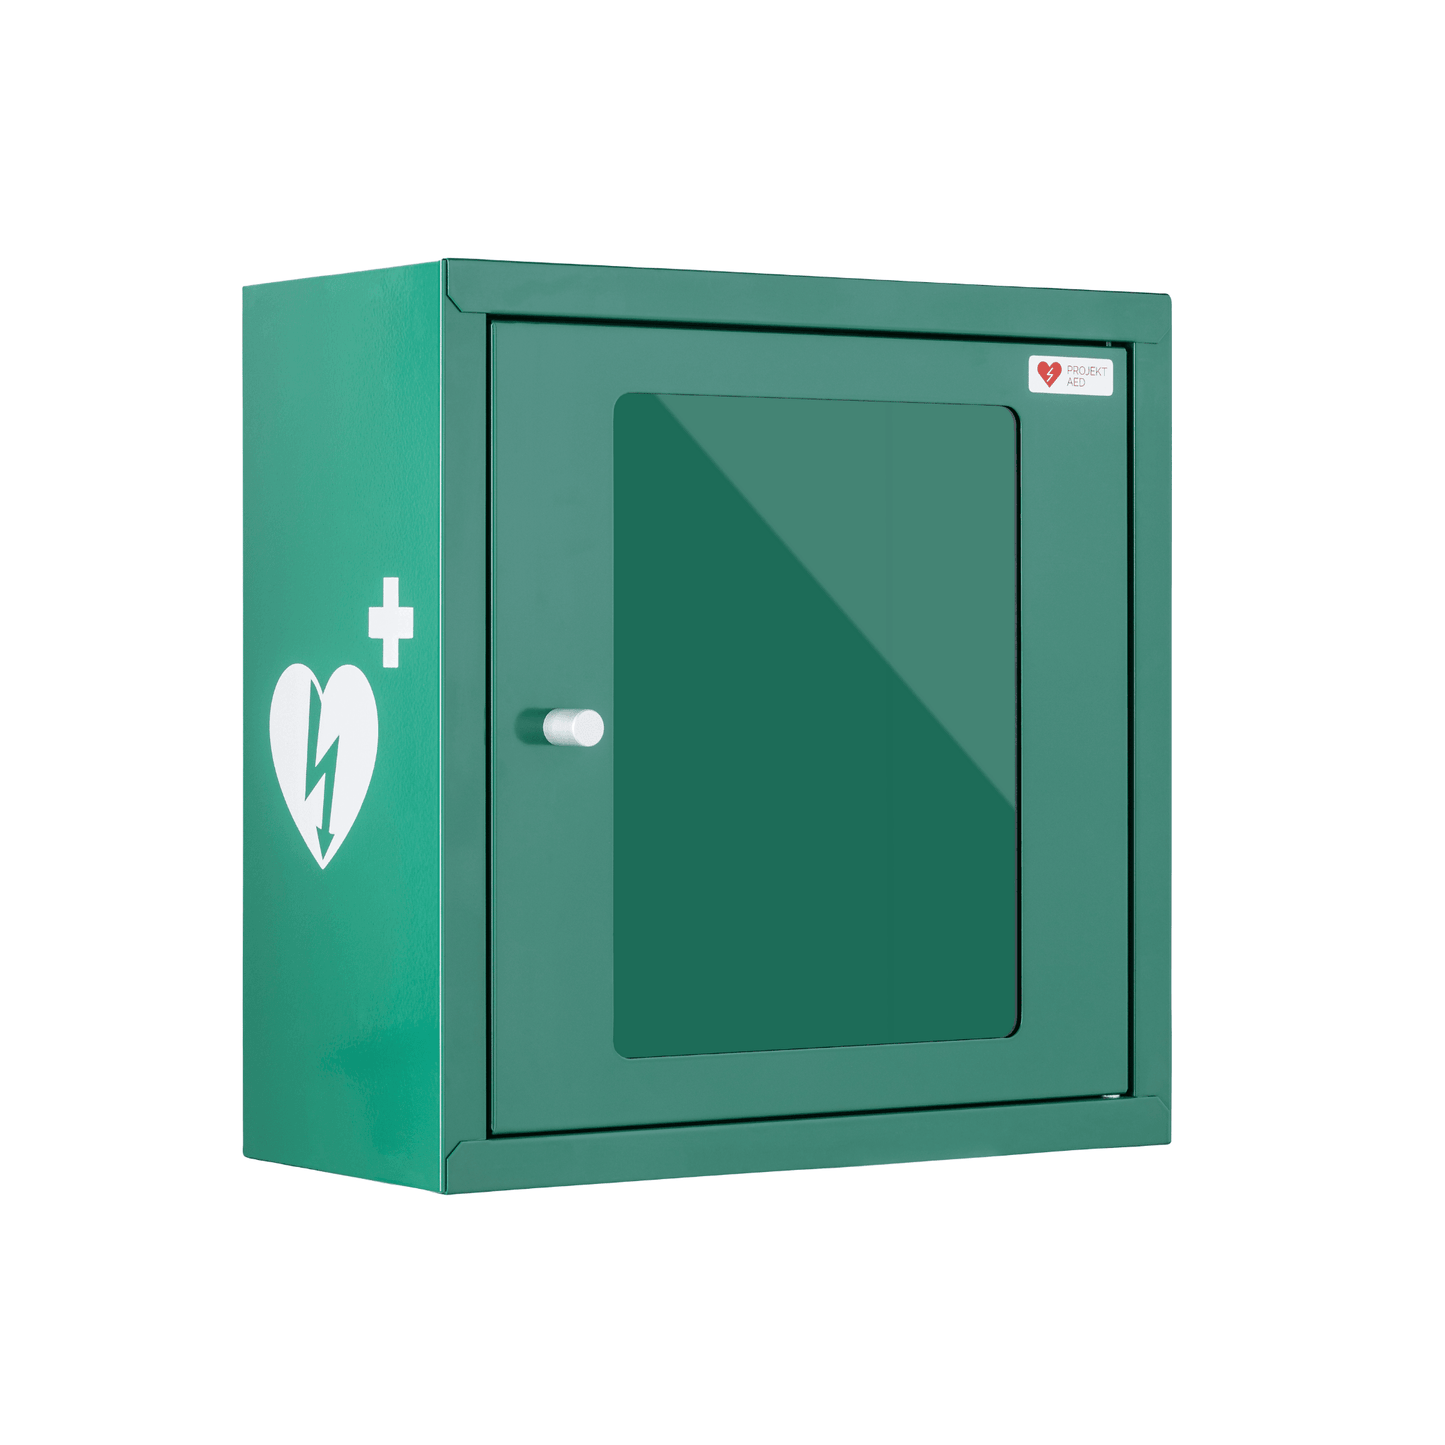 AED pakket: Philips HS1 AED met groene binnenkast - M5066A